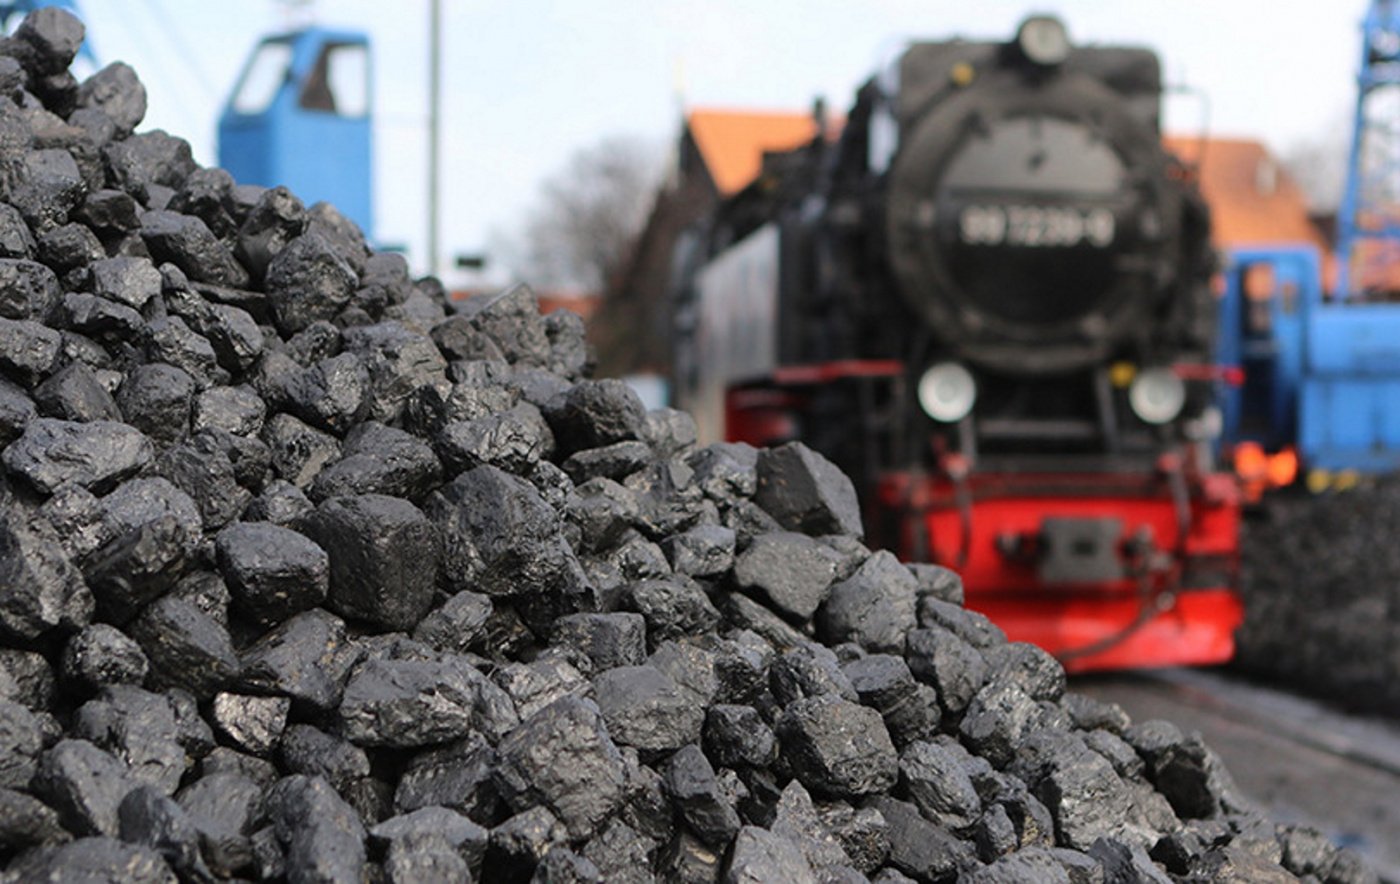 СГК перенаправляет уголь из Рубцовска в соседний Змеиногорск для недопущения сбоев в теплоснабжении